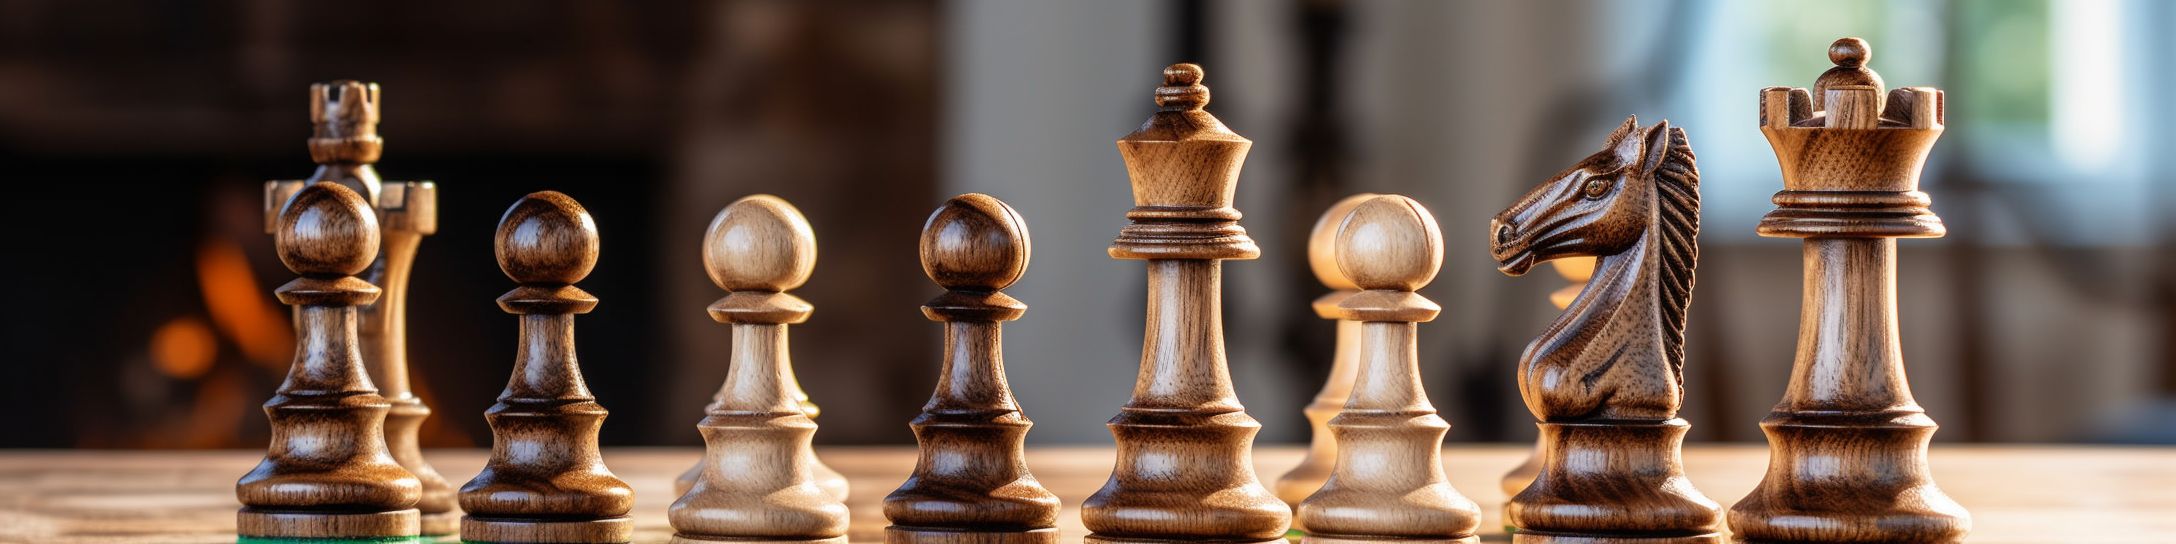 Comprendre la symbolique du bois dans les jeux d'échecs